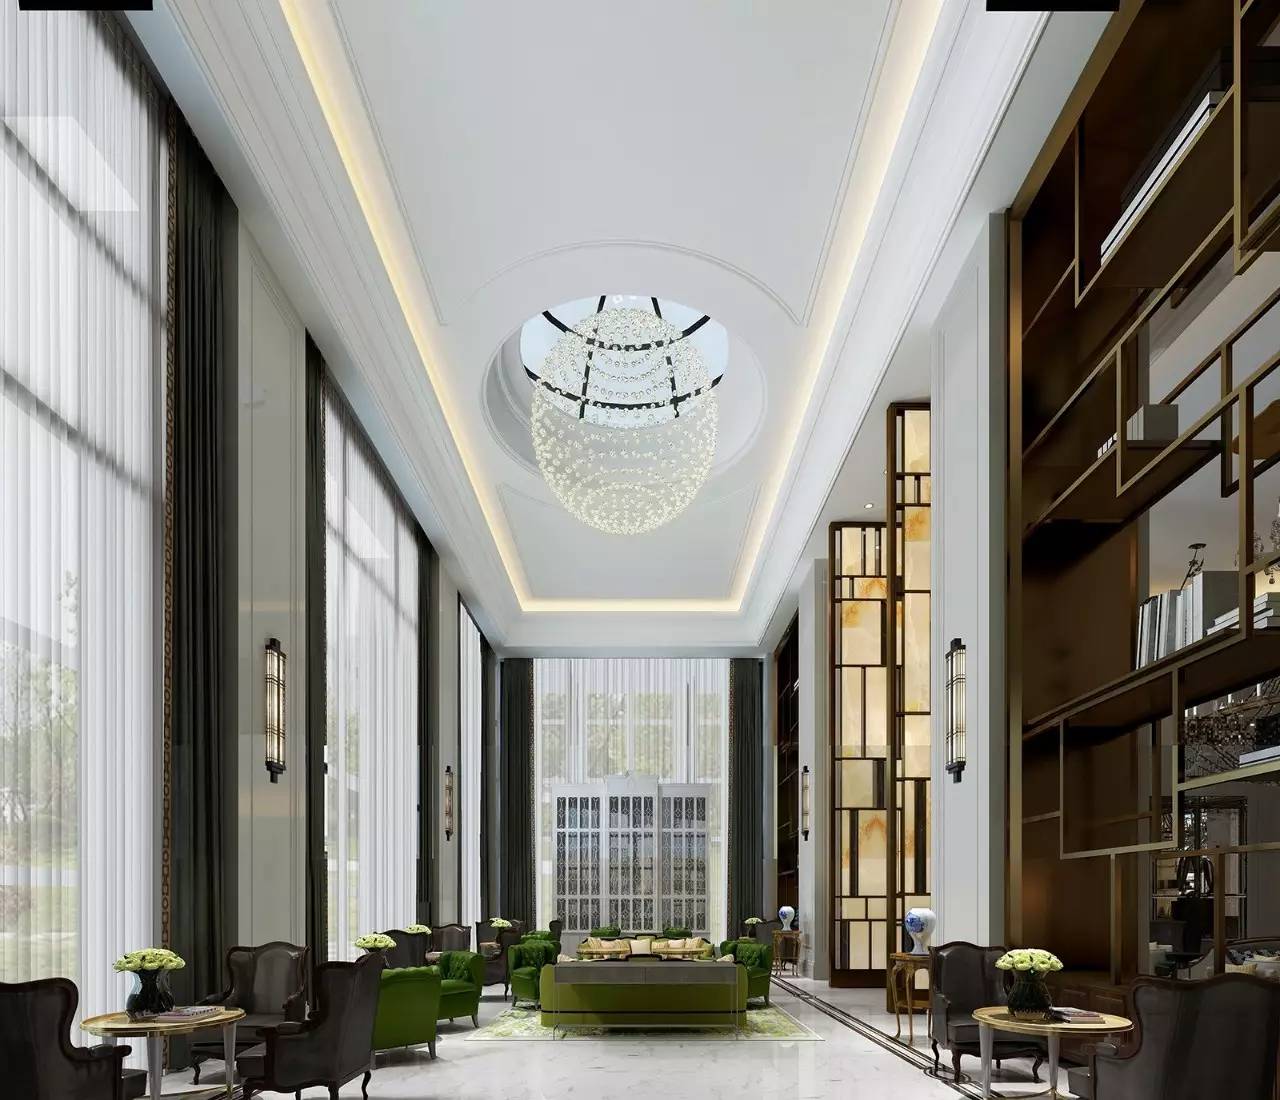 上海静安瑞吉酒店今日正式开幕